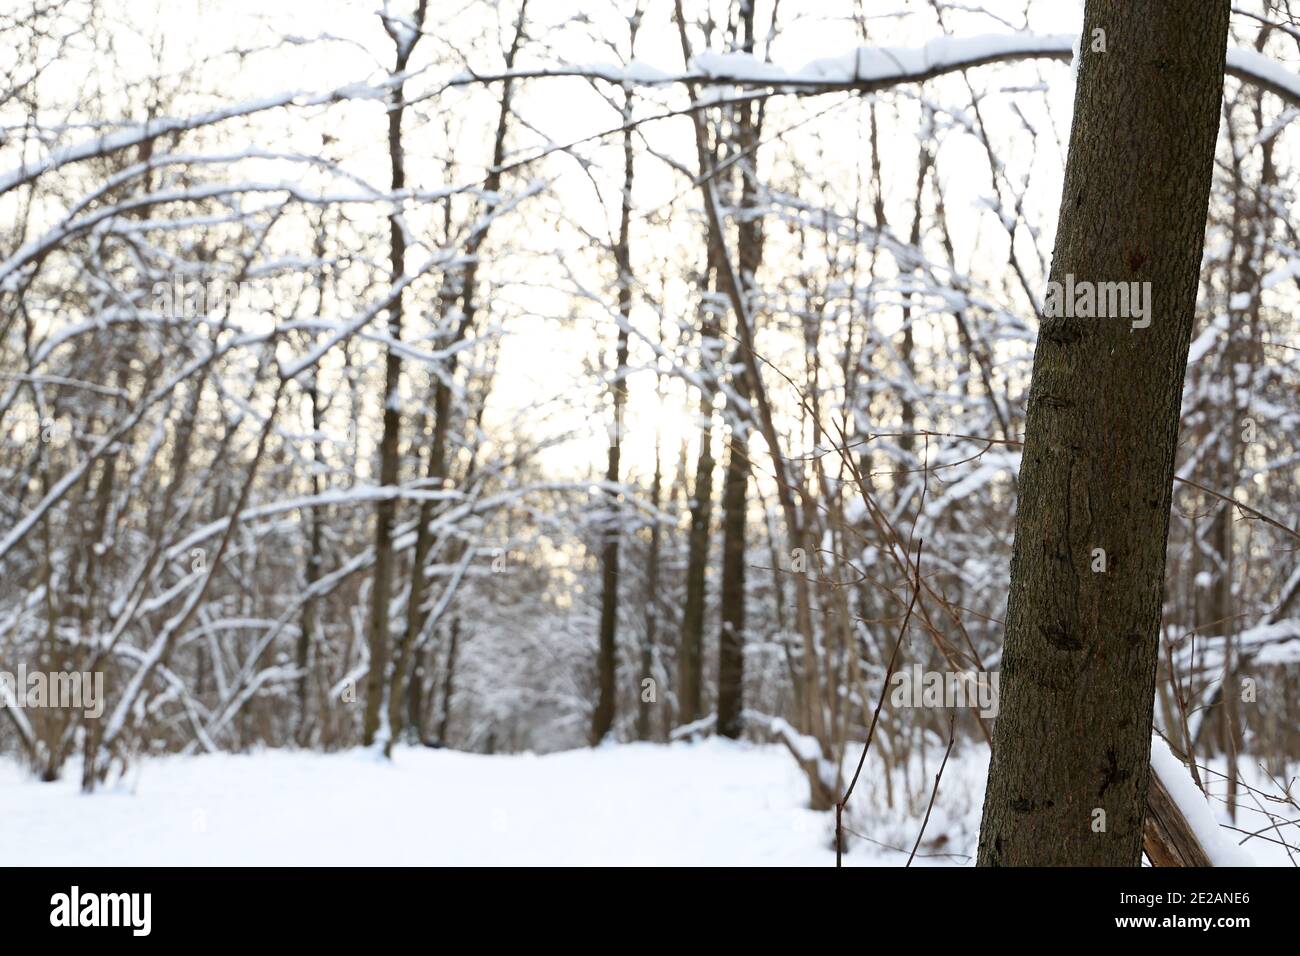 Forêt d'hiver, arbres couverts de neige au soleil. La nature après les chutes de neige, temps froid Banque D'Images